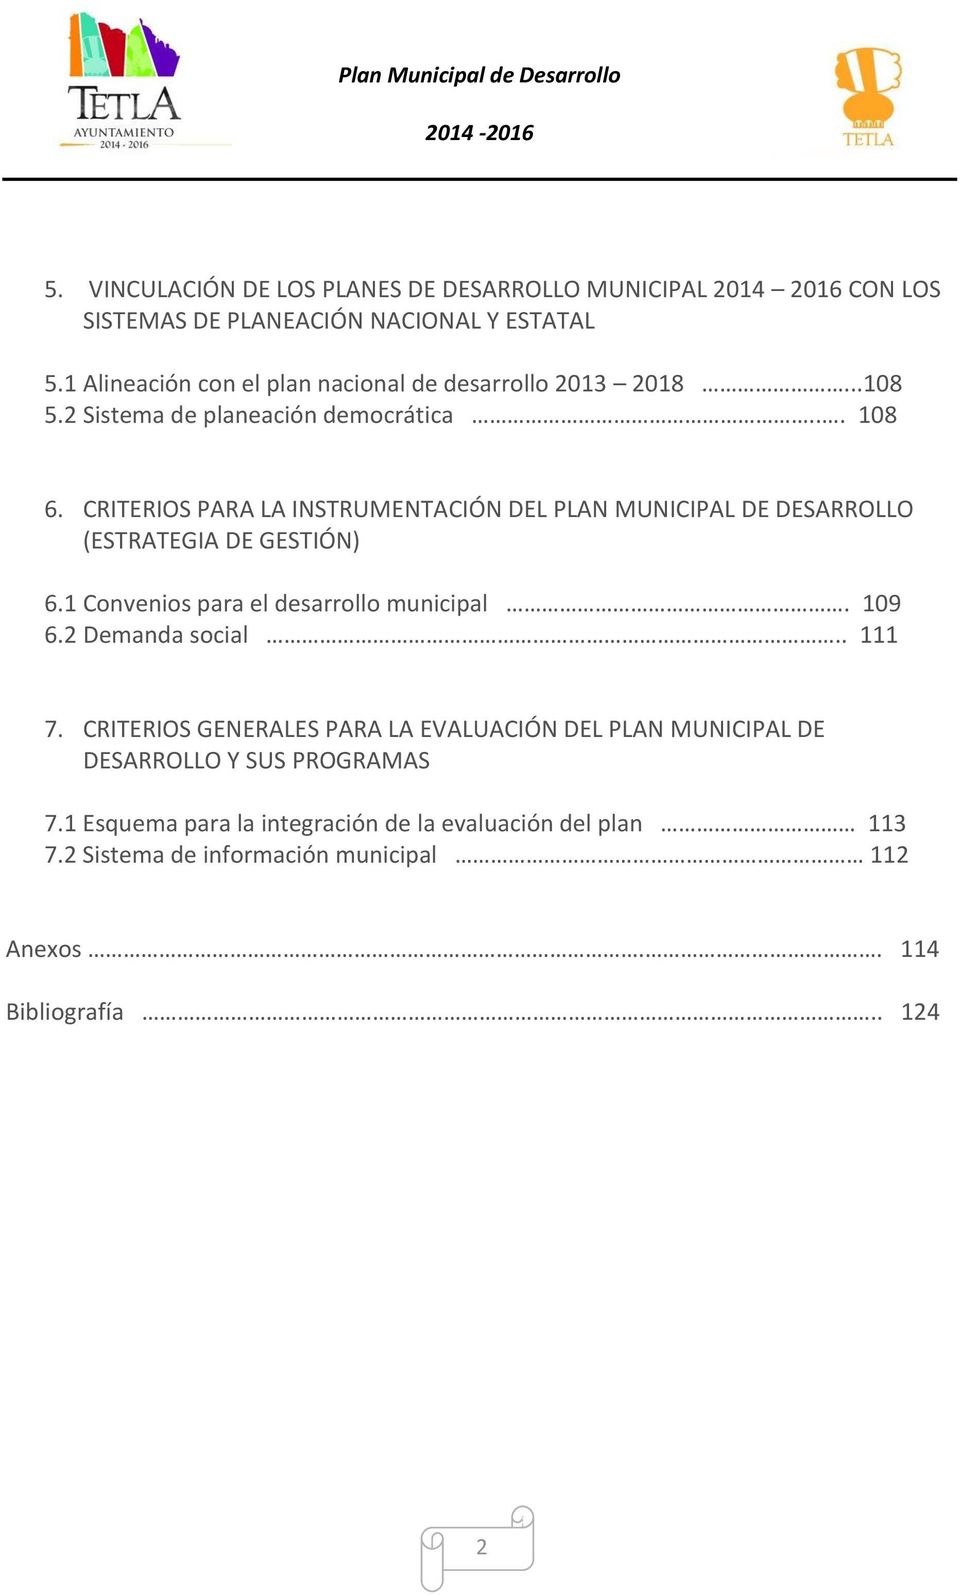 CRITERIOS PARA LA INSTRUMENTACIÓN DEL PLAN MUNICIPAL DE DESARROLLO (ESTRATEGIA DE GESTIÓN) 6.1 Convenios para el desarrollo municipal. 109 6.